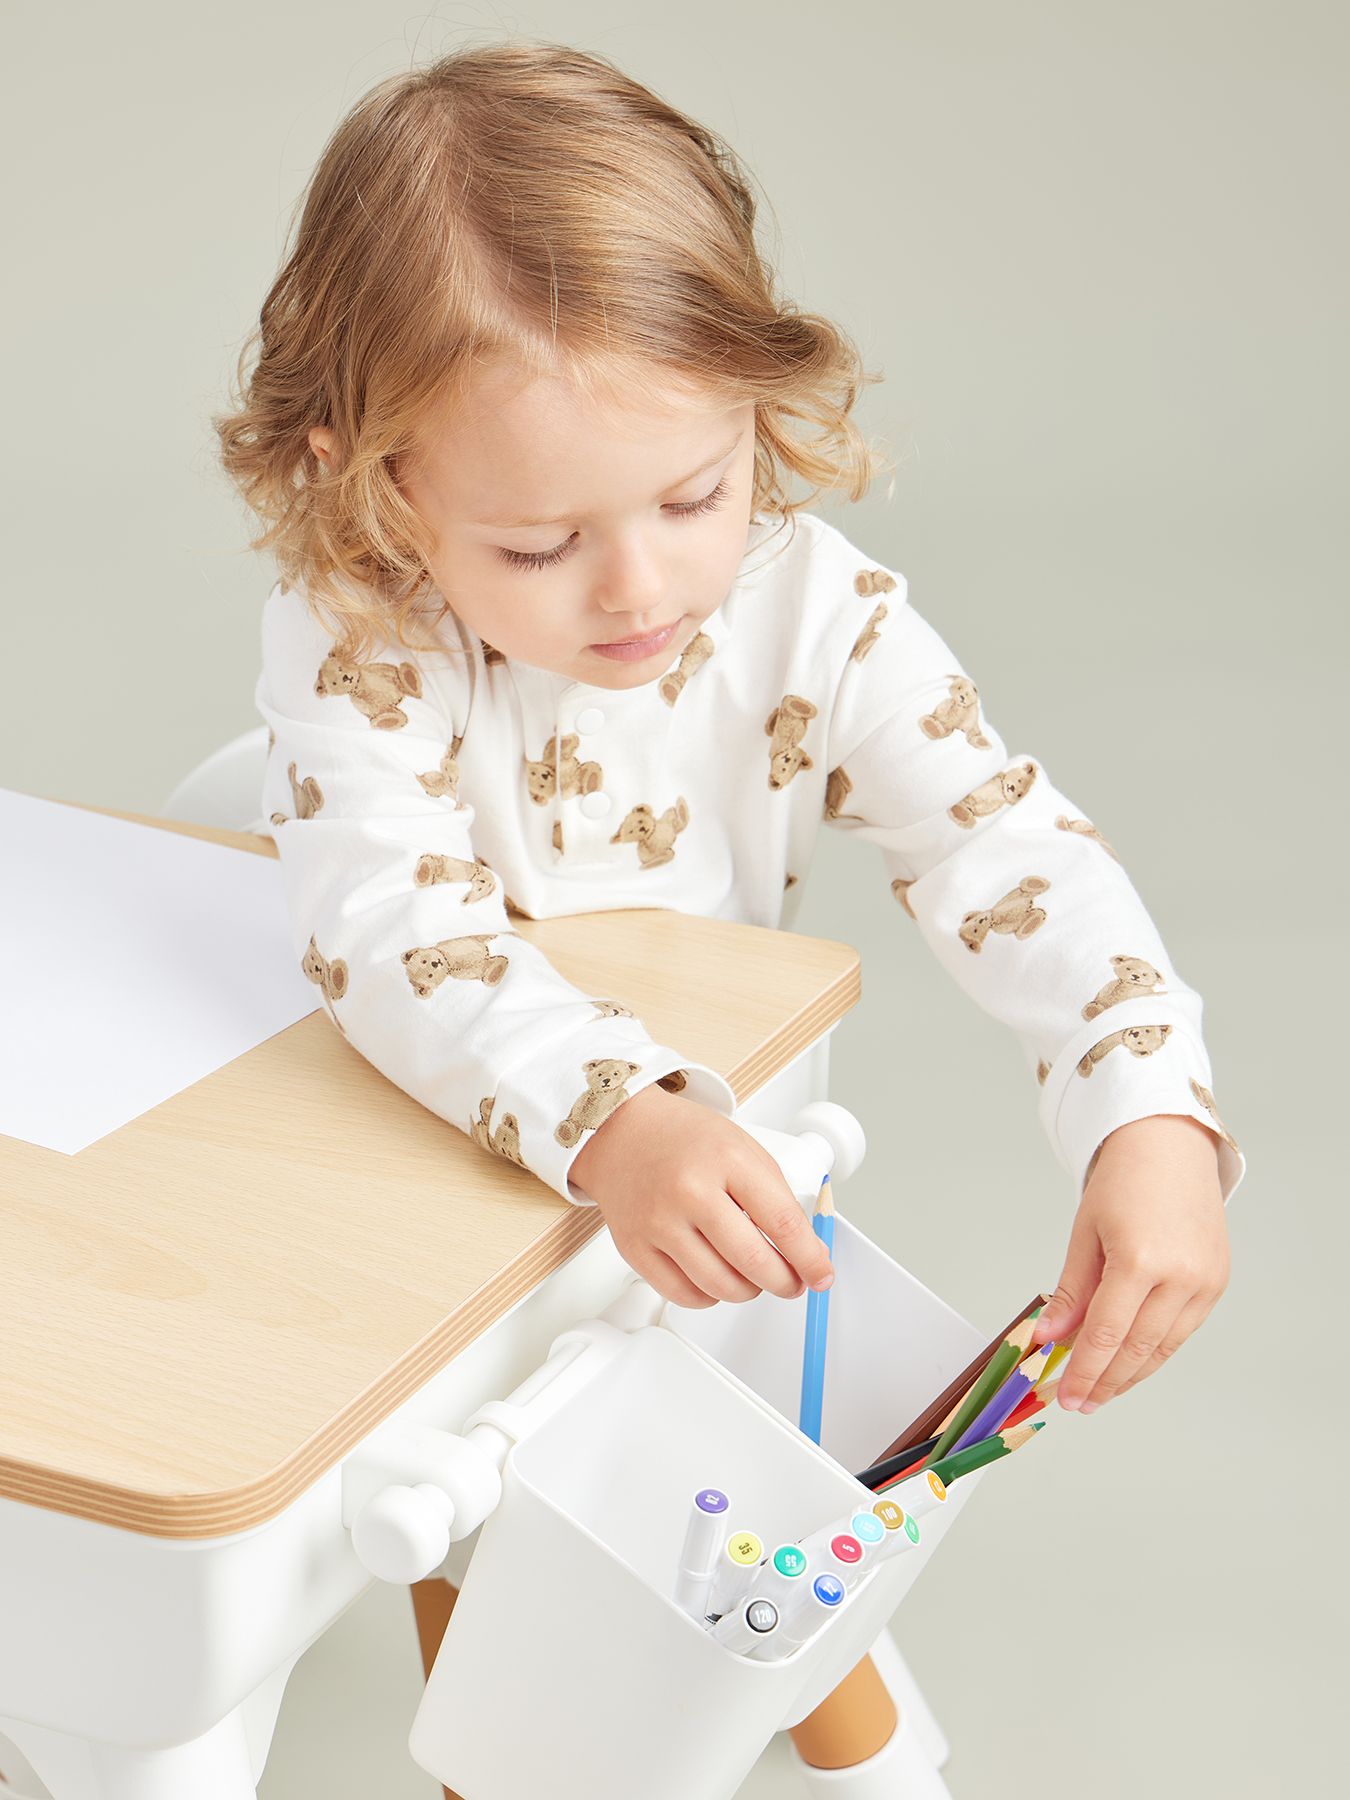 Комплект детской мебели LITEN: стол и стул Happy Baby